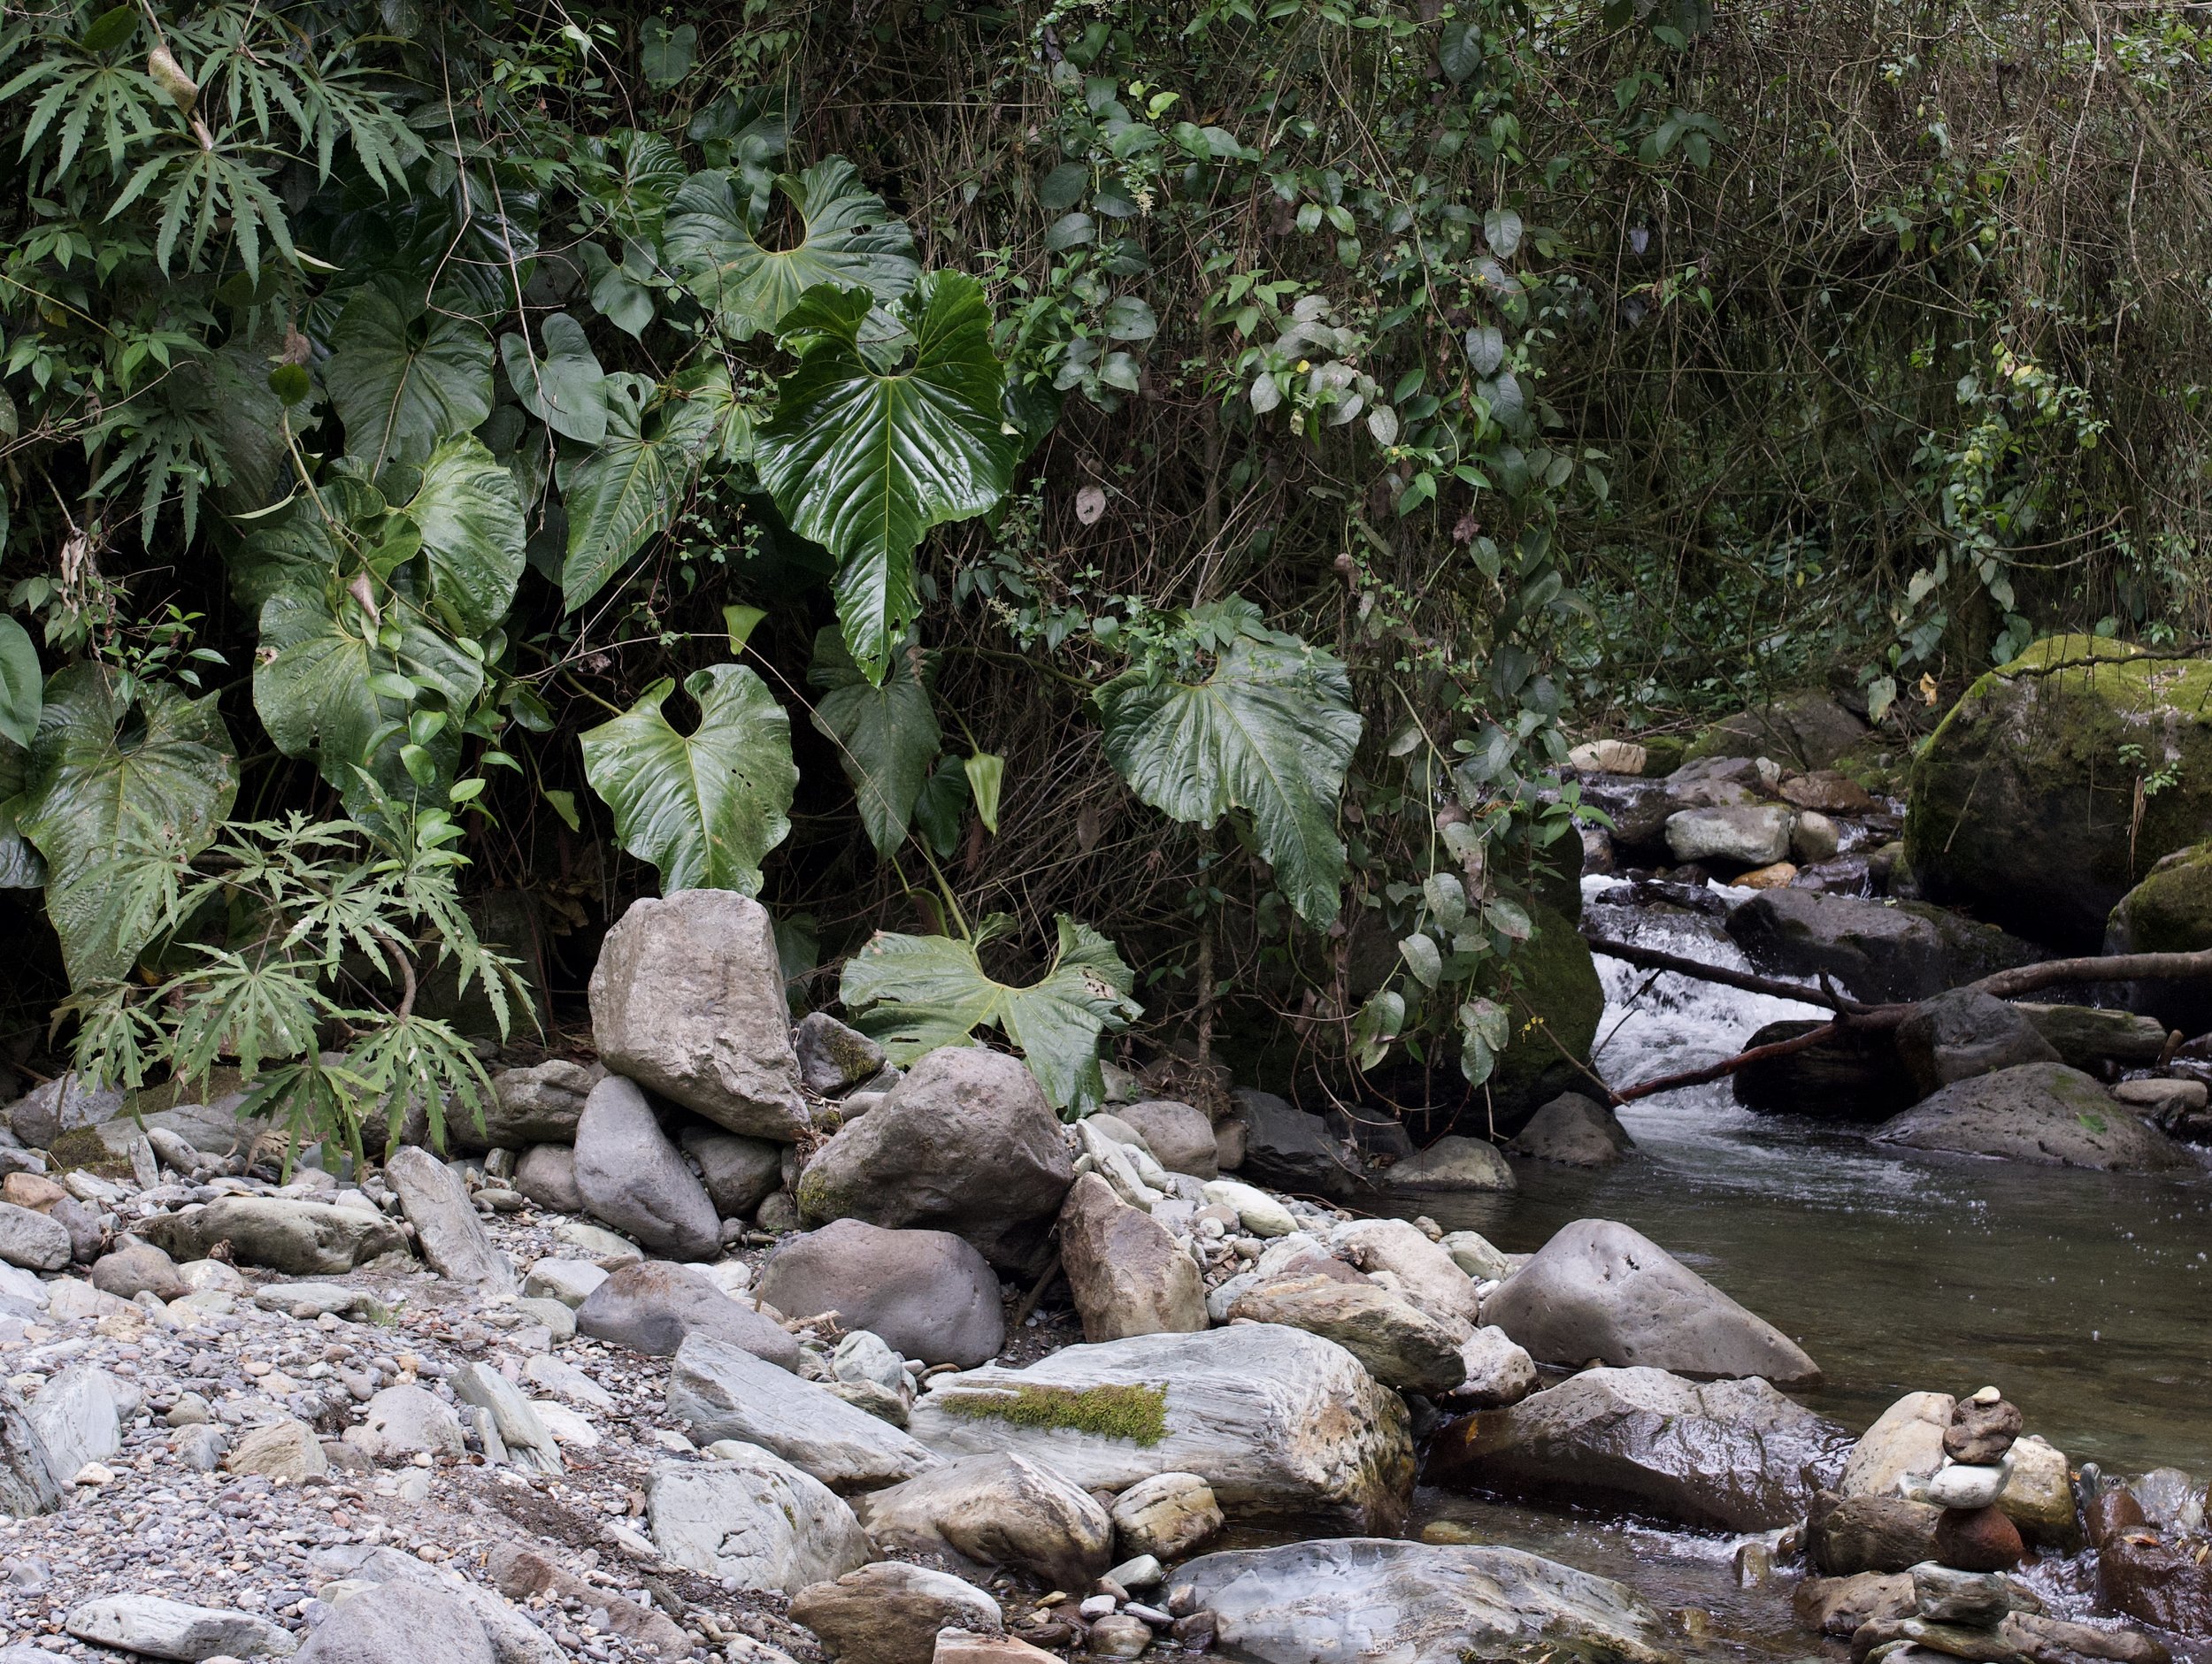   Anthurium cupulispathum , Quindío Department, Colombia. Image: ©J. Vannini 